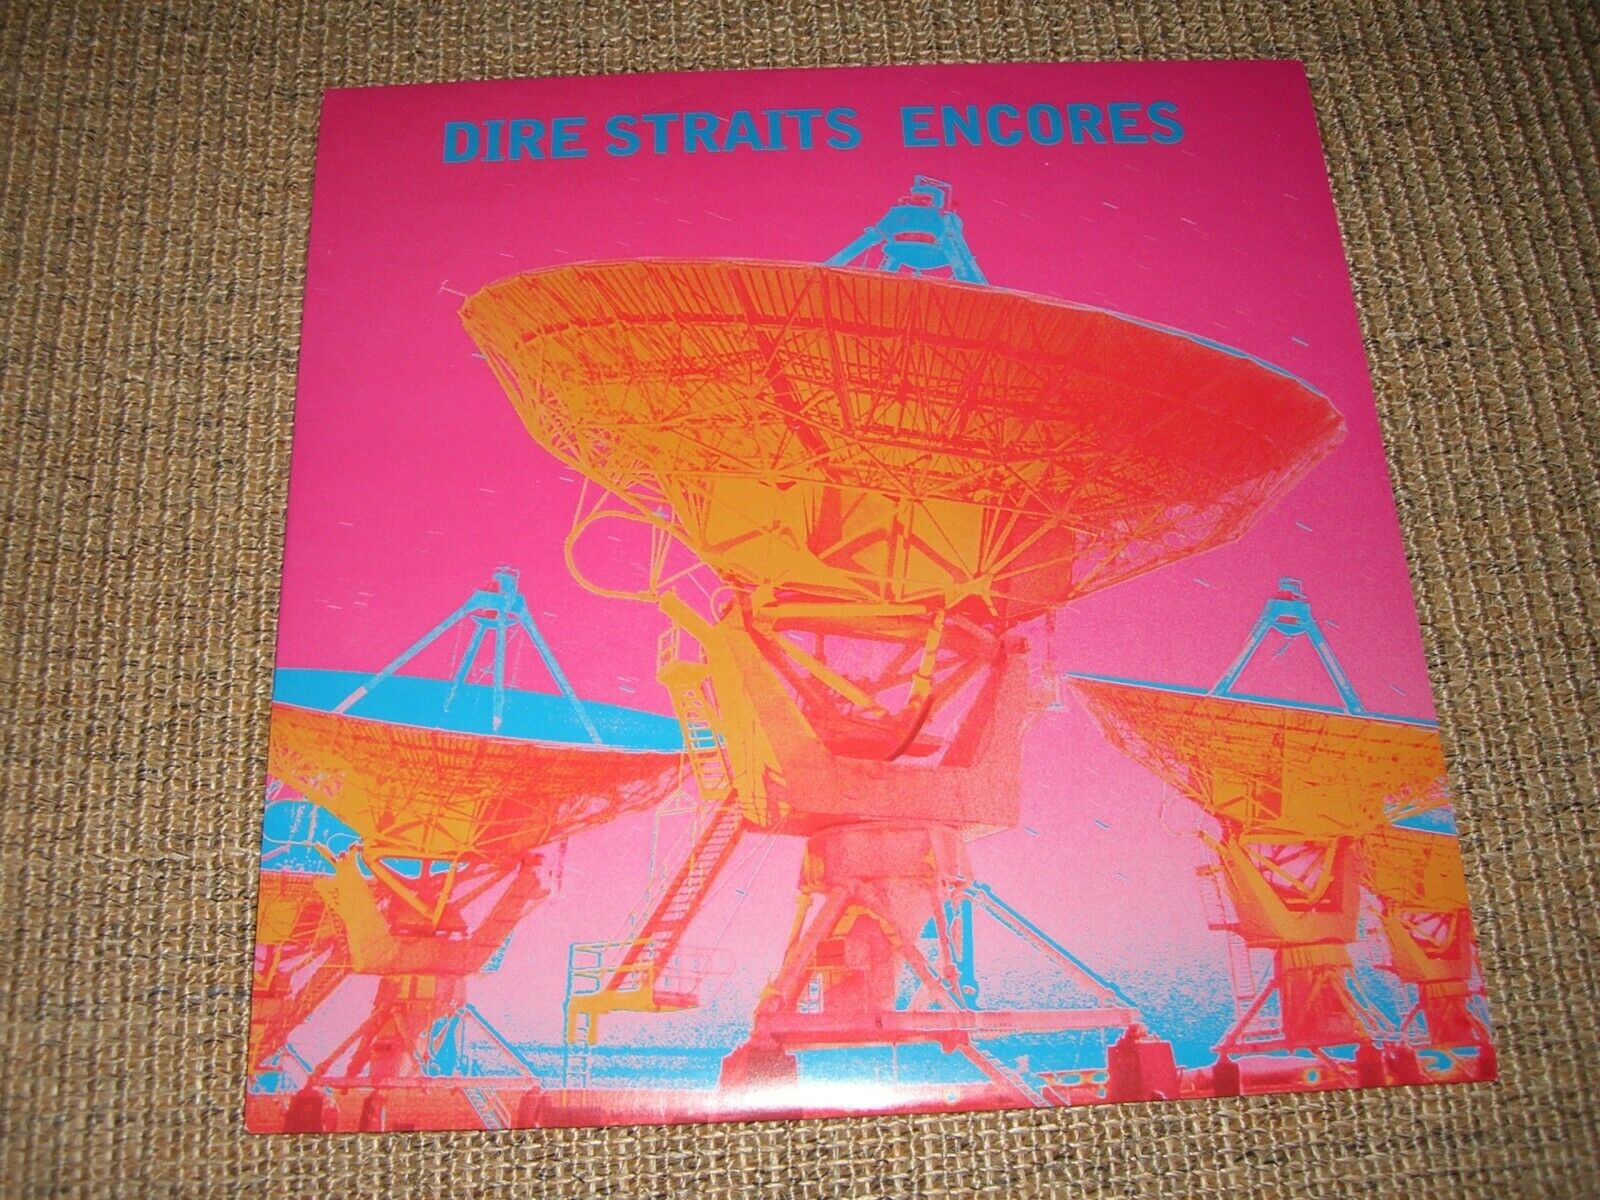 popsike.com - Dire Straits On The Night + Maxi 12" Encores Vinyl Vertigo  1993 - auction details